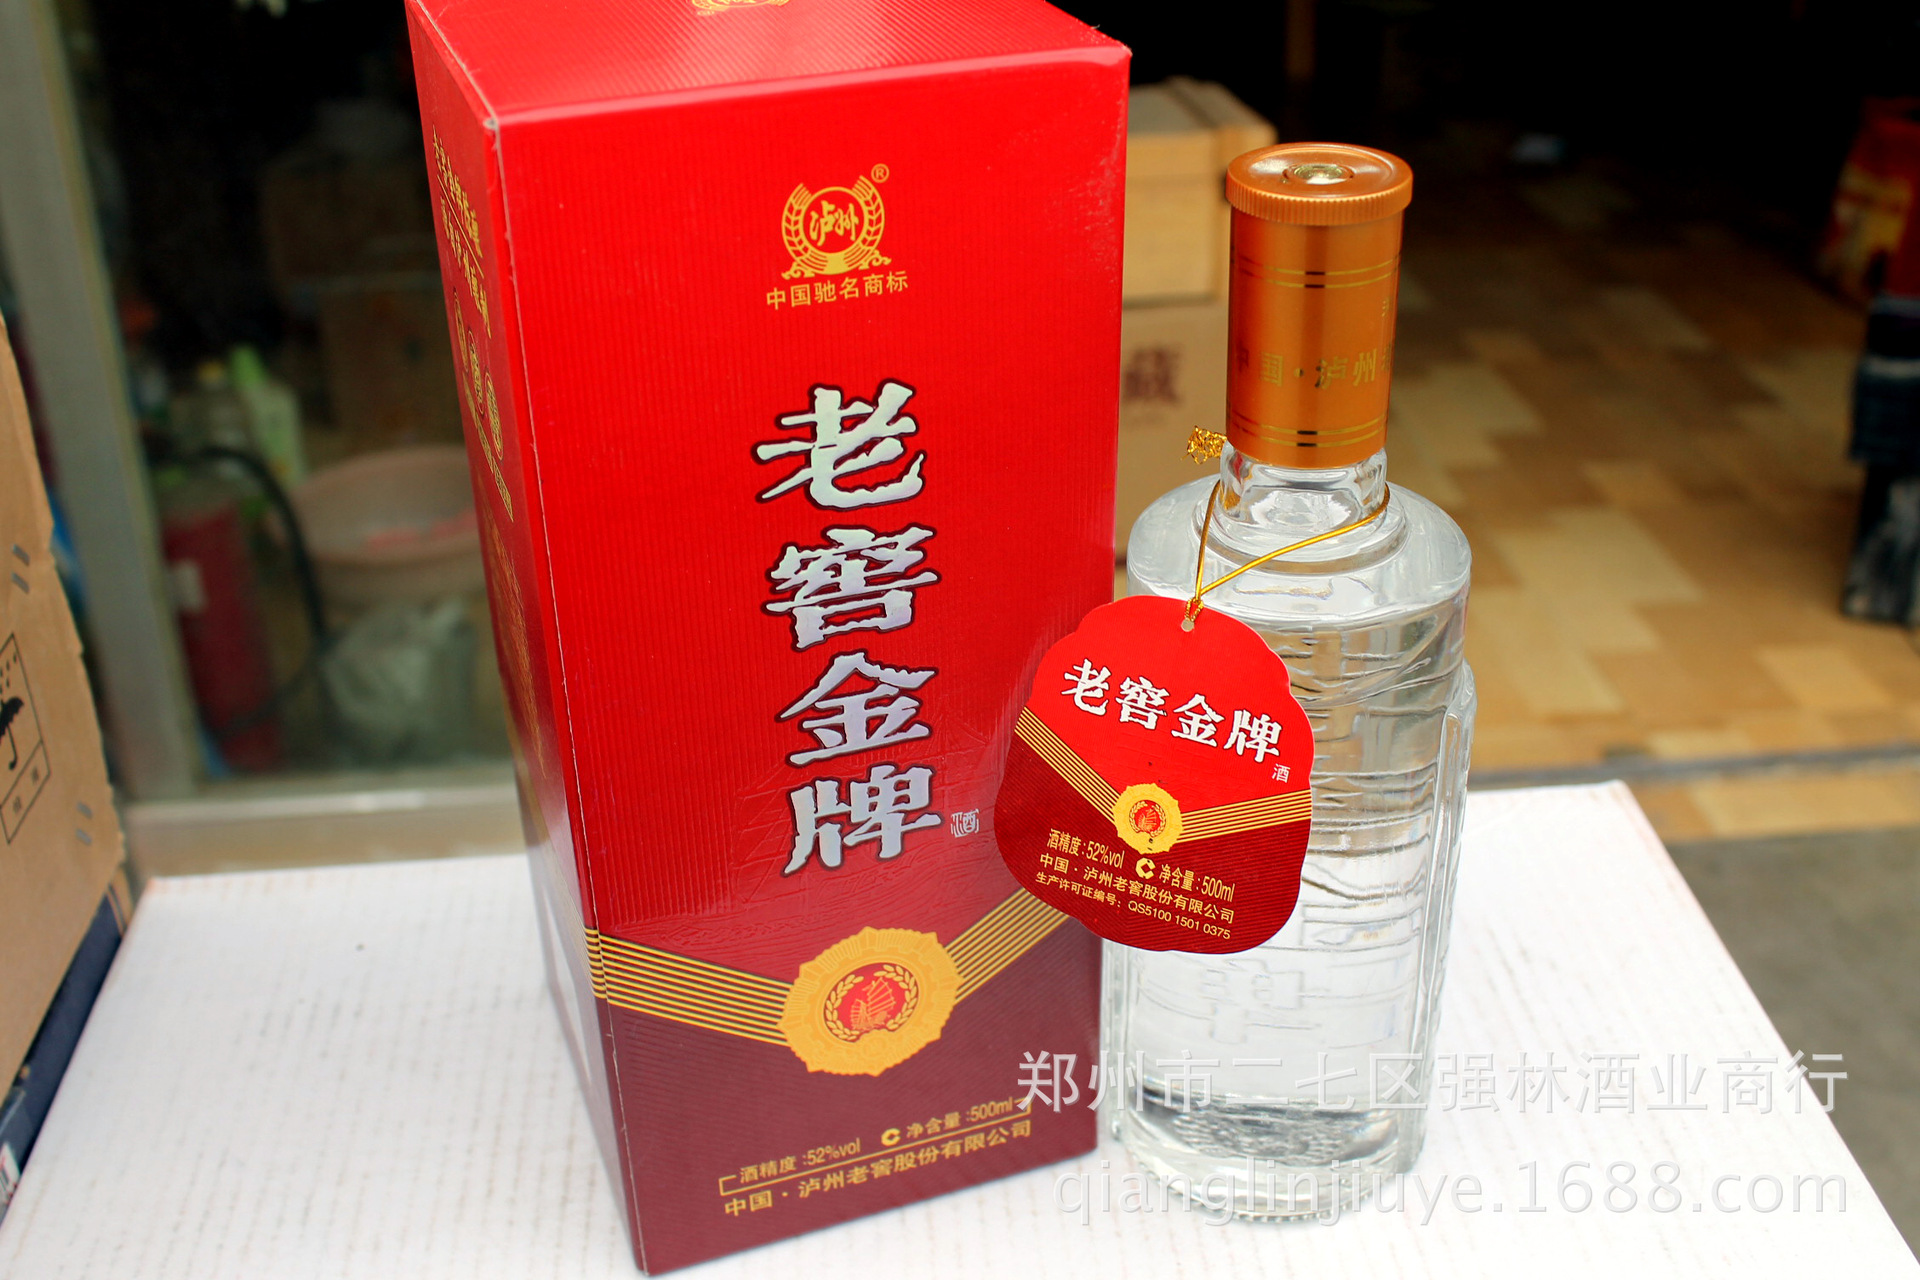 团批零售 中国名酒四川泸州系列—老窖金牌陈酿 52度浓香型白酒